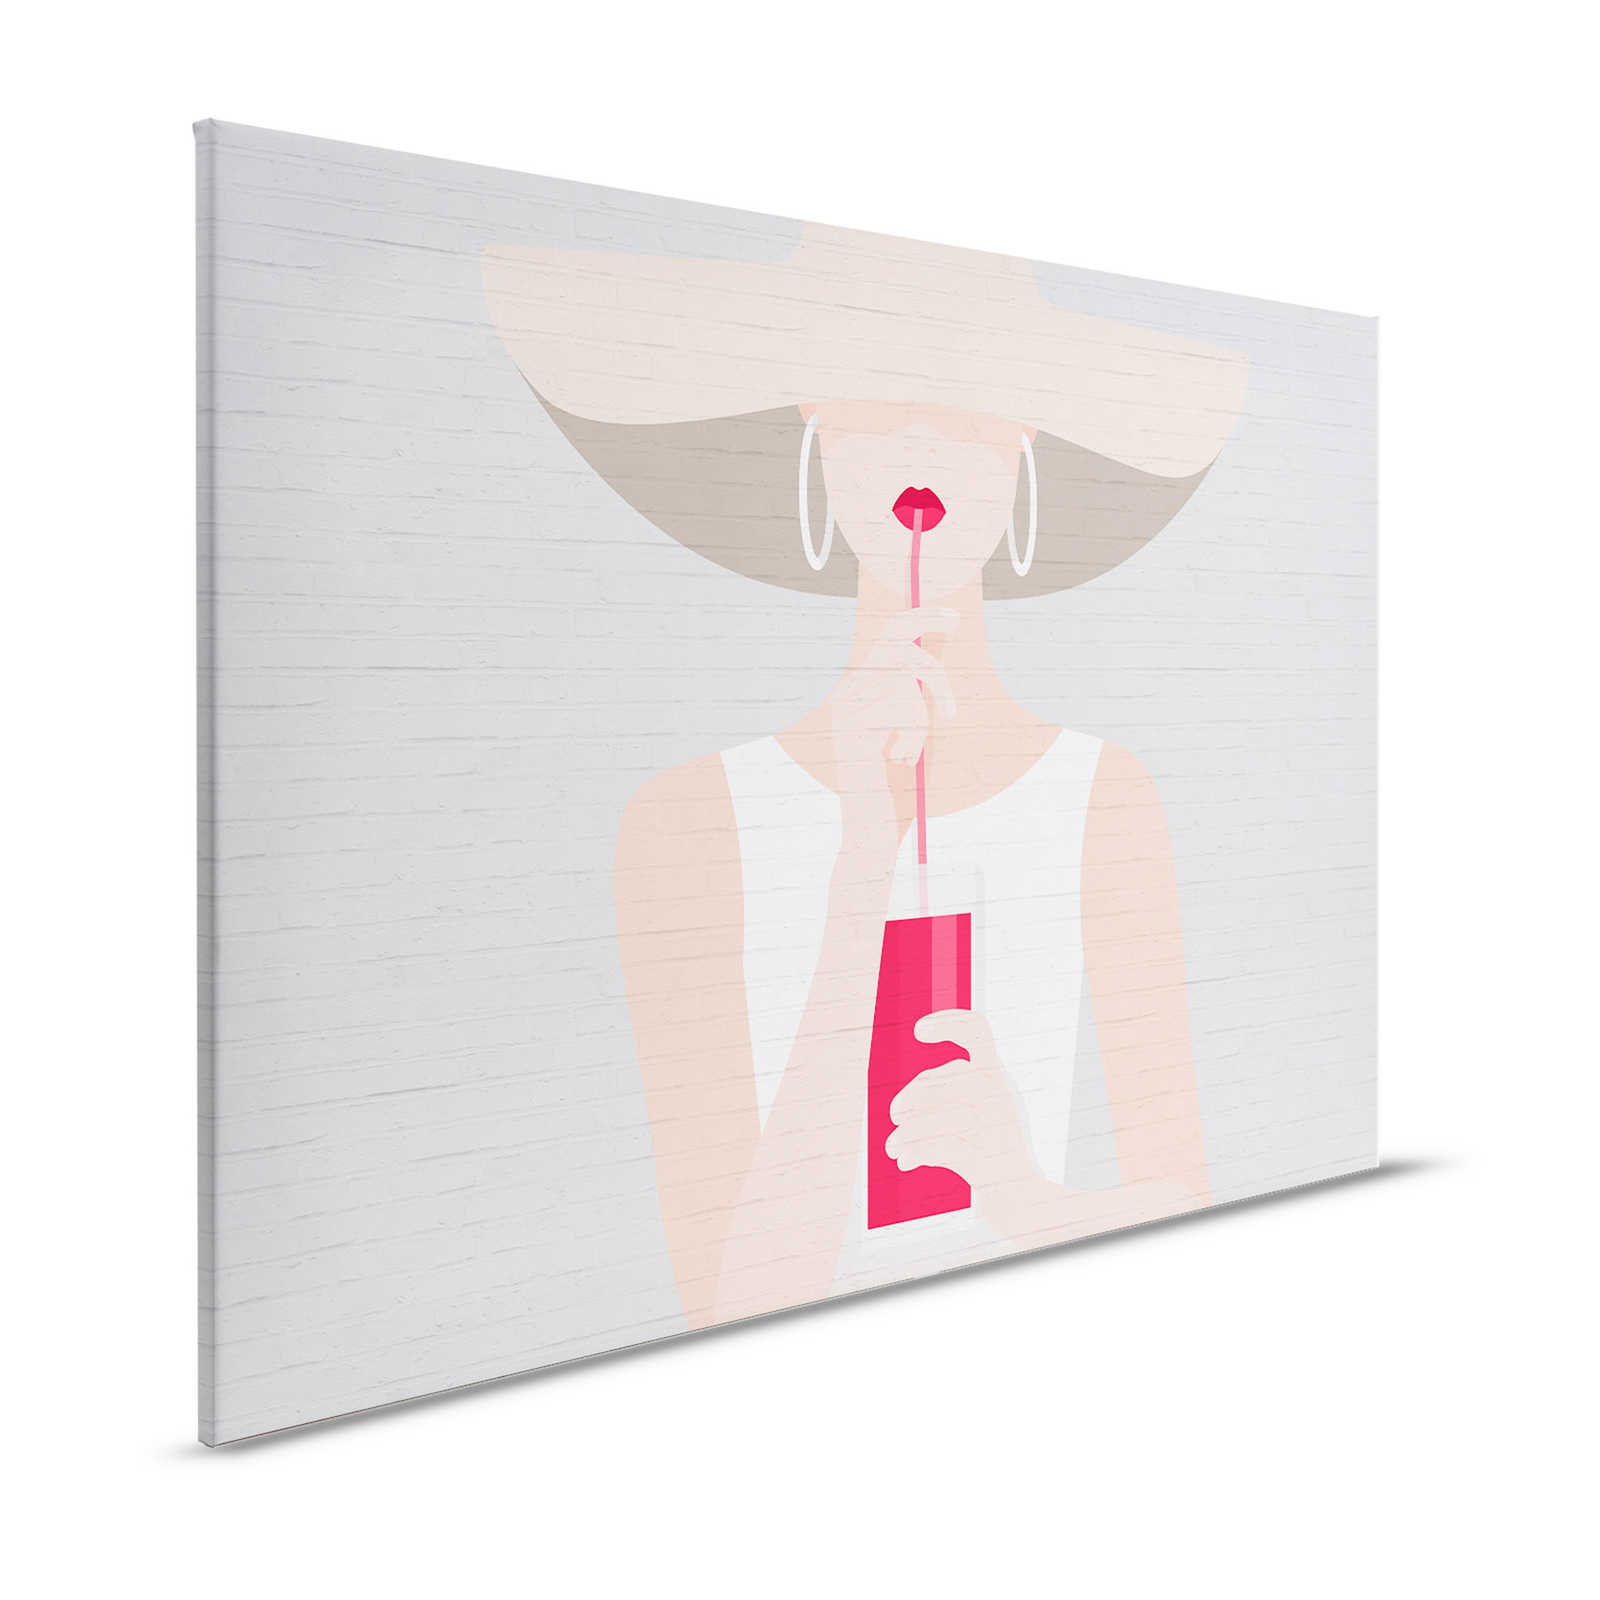 Steinoptik Leinwandbild mit Frauen Motiv im Sommer Look – 1,20 m x 0,80 m
